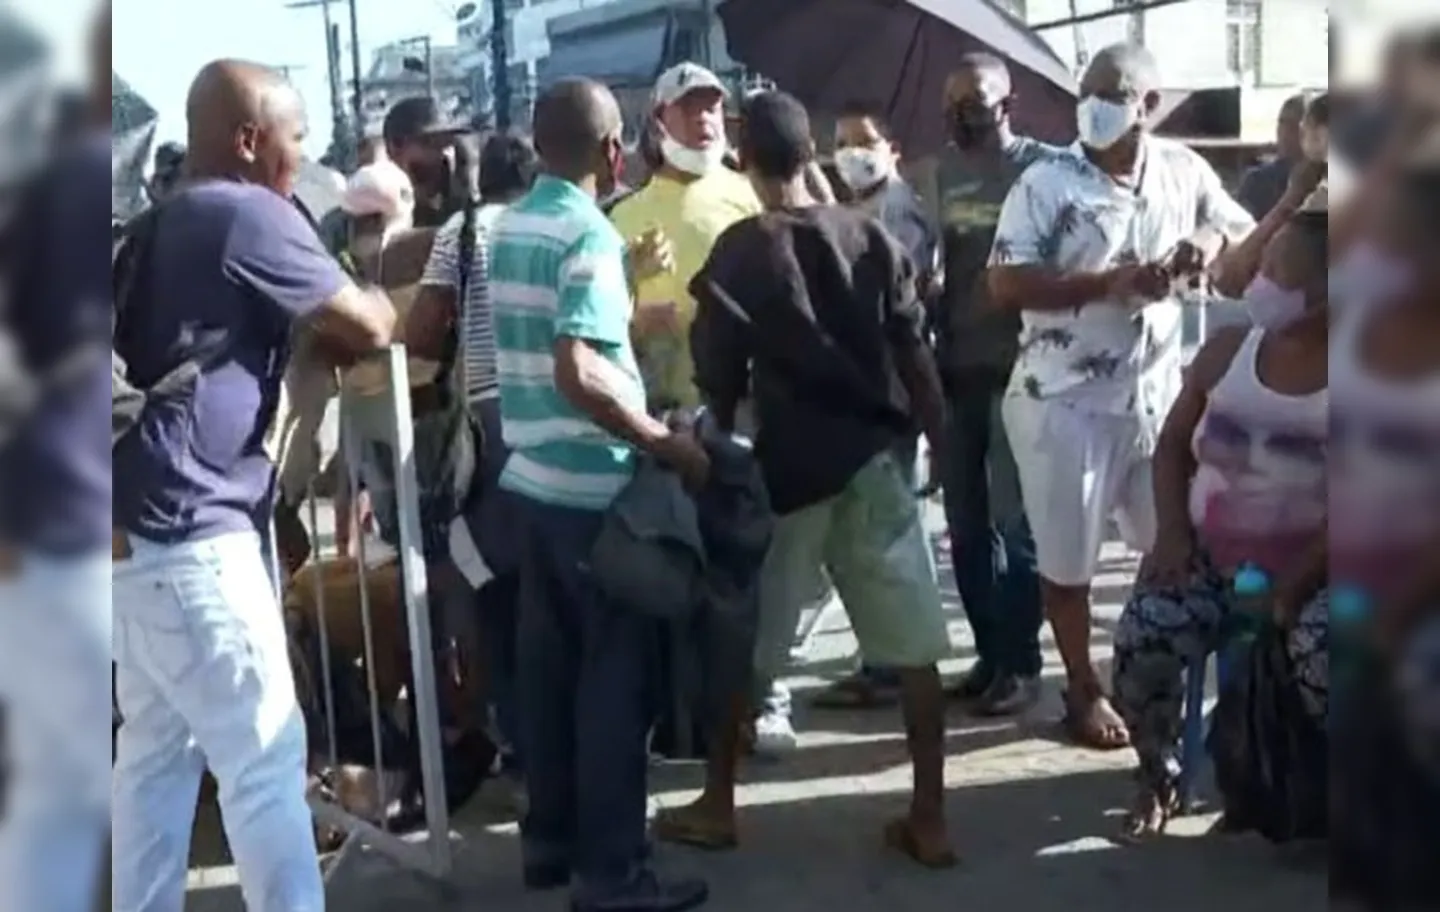 Polícia Militar foi chamada ao local e apartou a briga, que teria começado após um dos homens acusar o outro de ter furado a fila. | Foto: Reprodução/TV Bahia